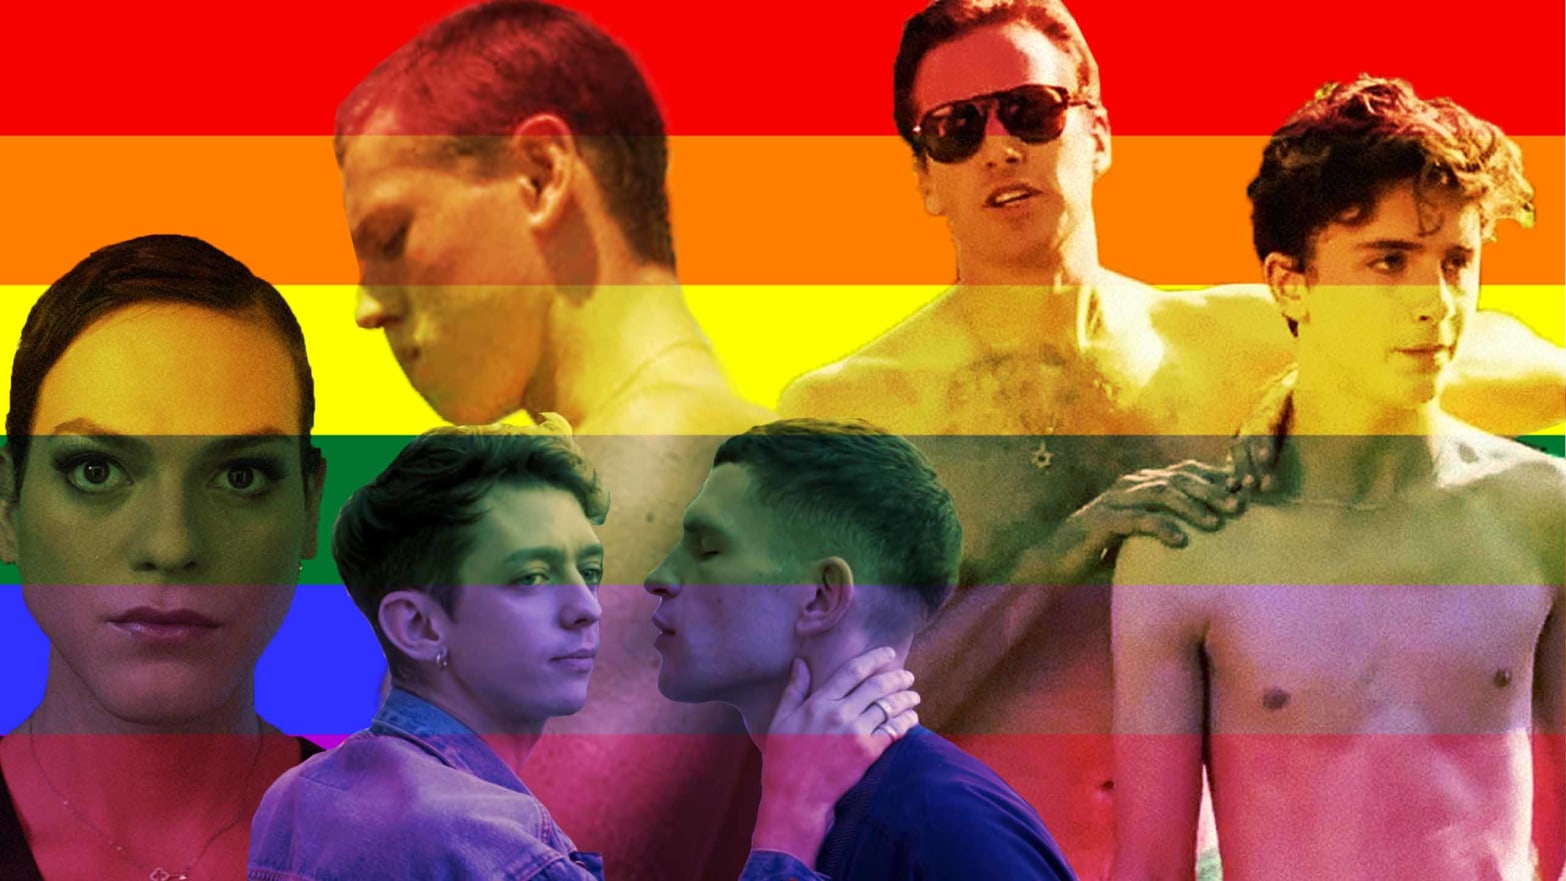 фильмы i про геев и лесбиянок фото 64